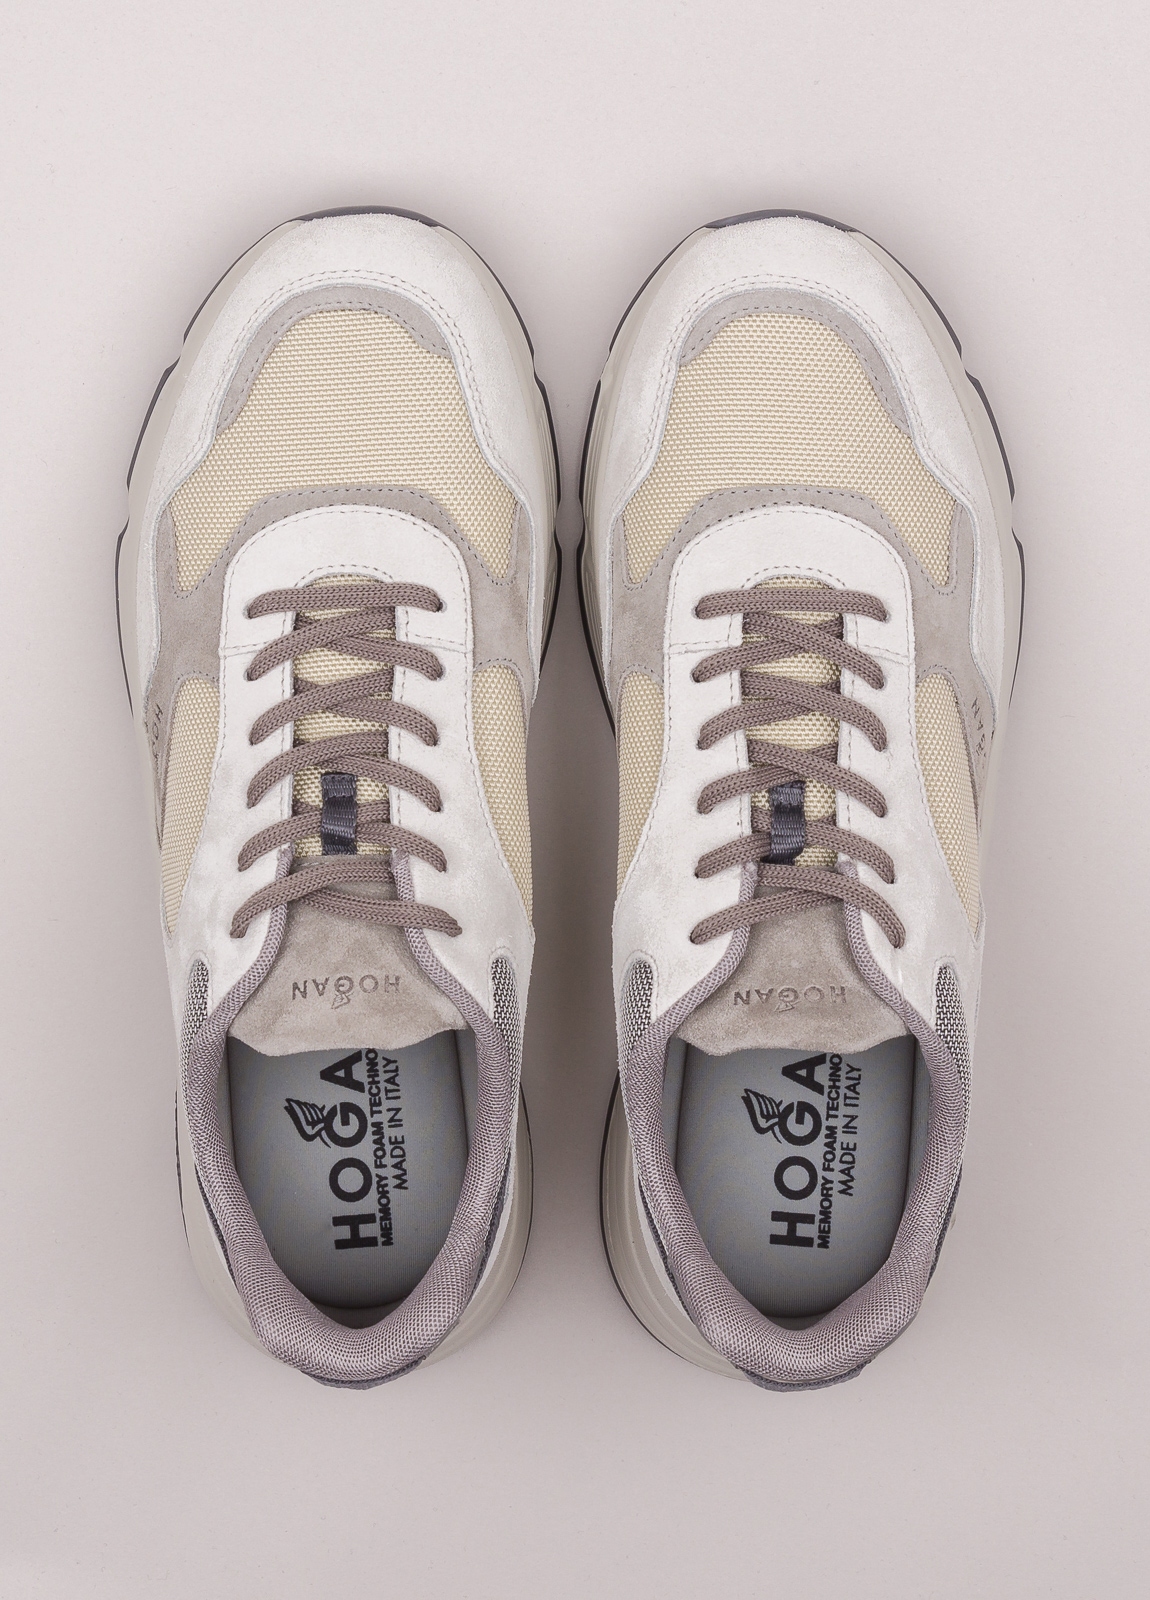 Zapatillas deportivas HOGAN color hielo, piedra y beige - Ítem1